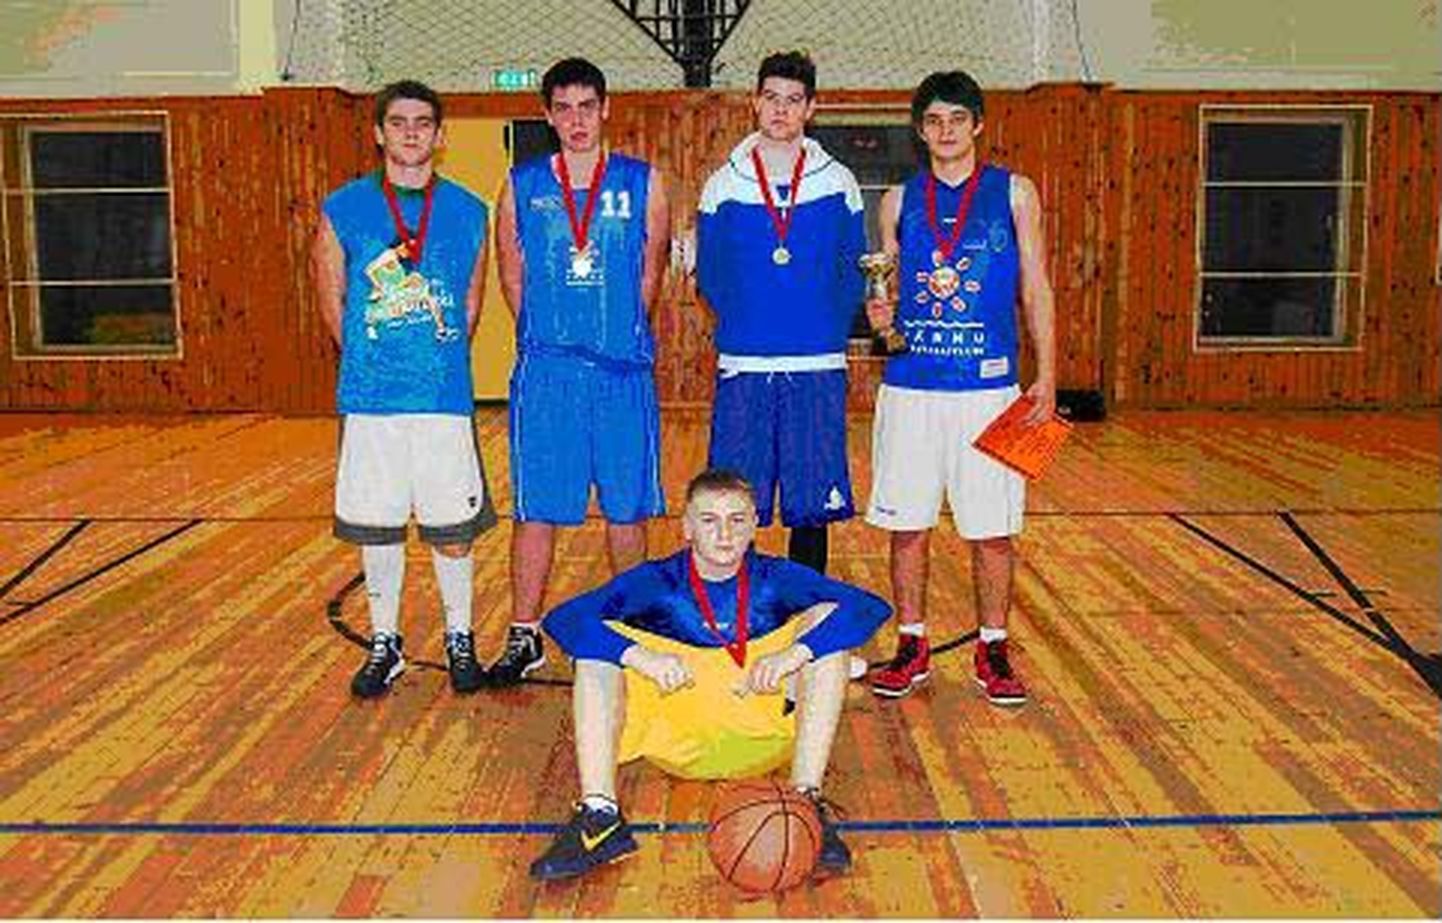 Paikuse noortekogu korraldatud sõbrapäeva korvpalliturniiri võitjad - meeskond Paikuse.